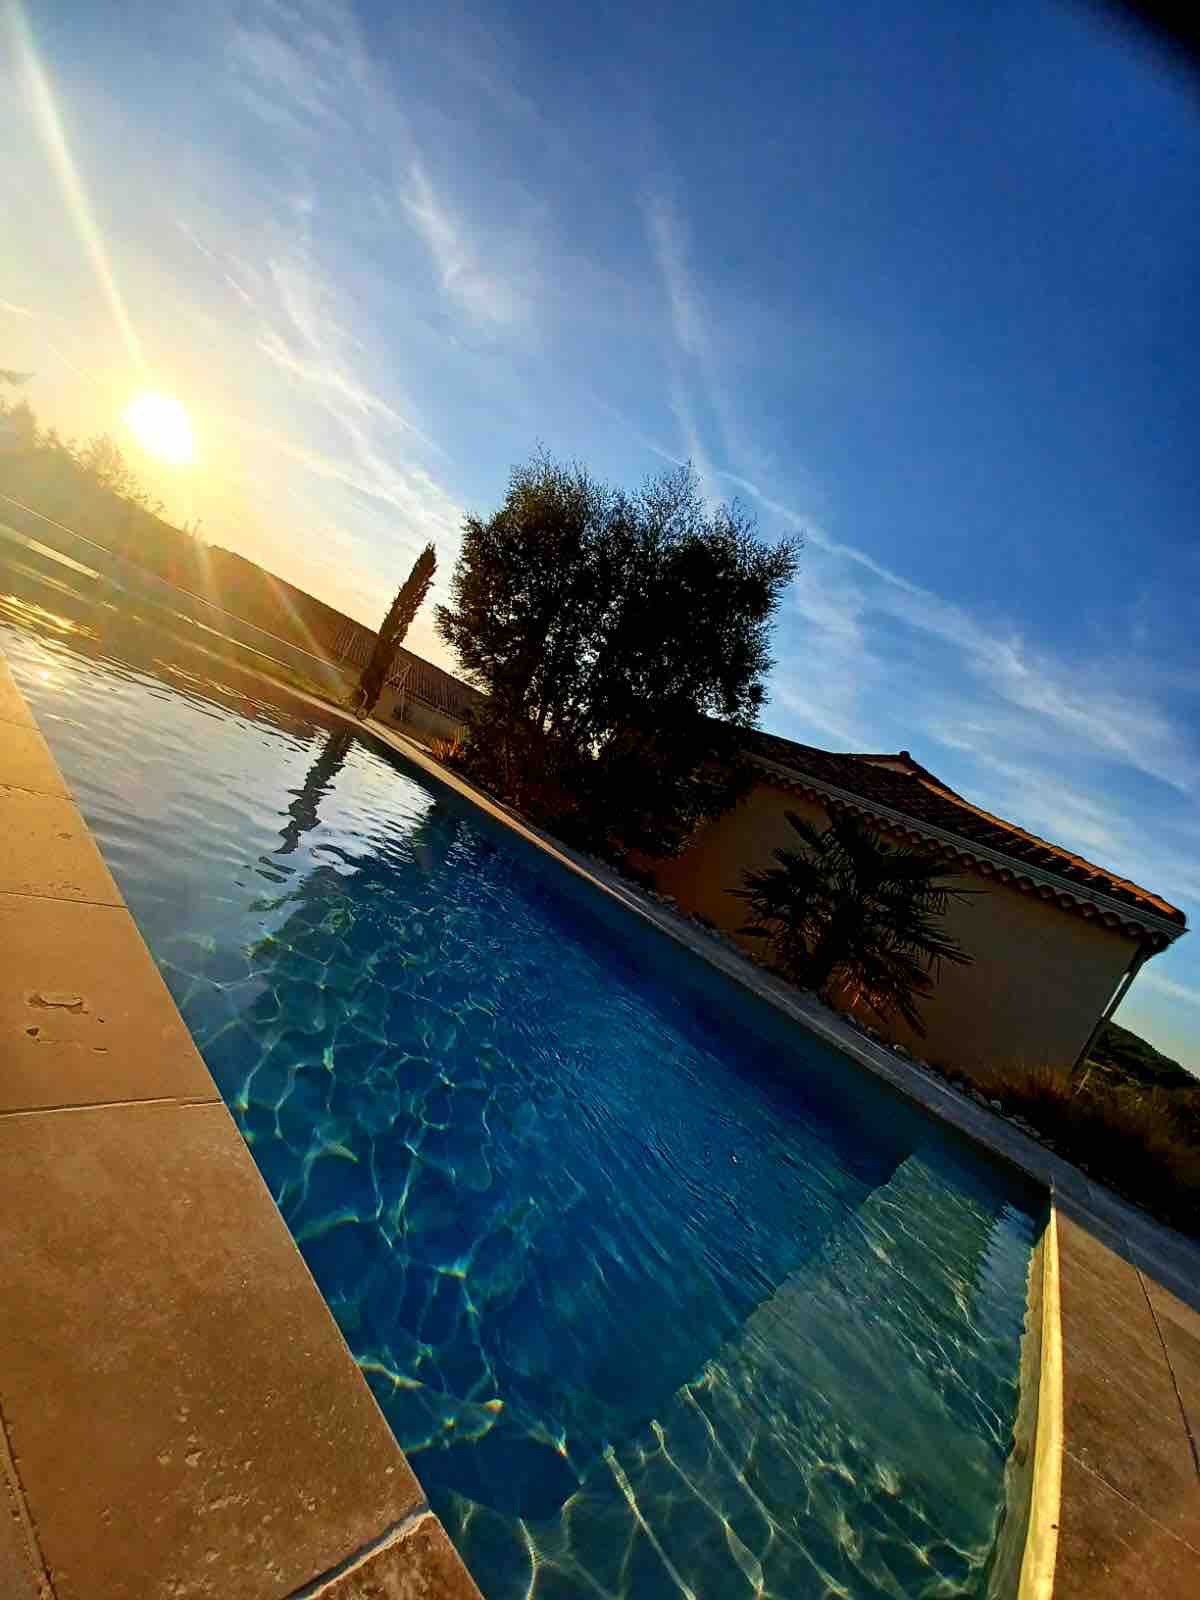 Belle villa avec piscine